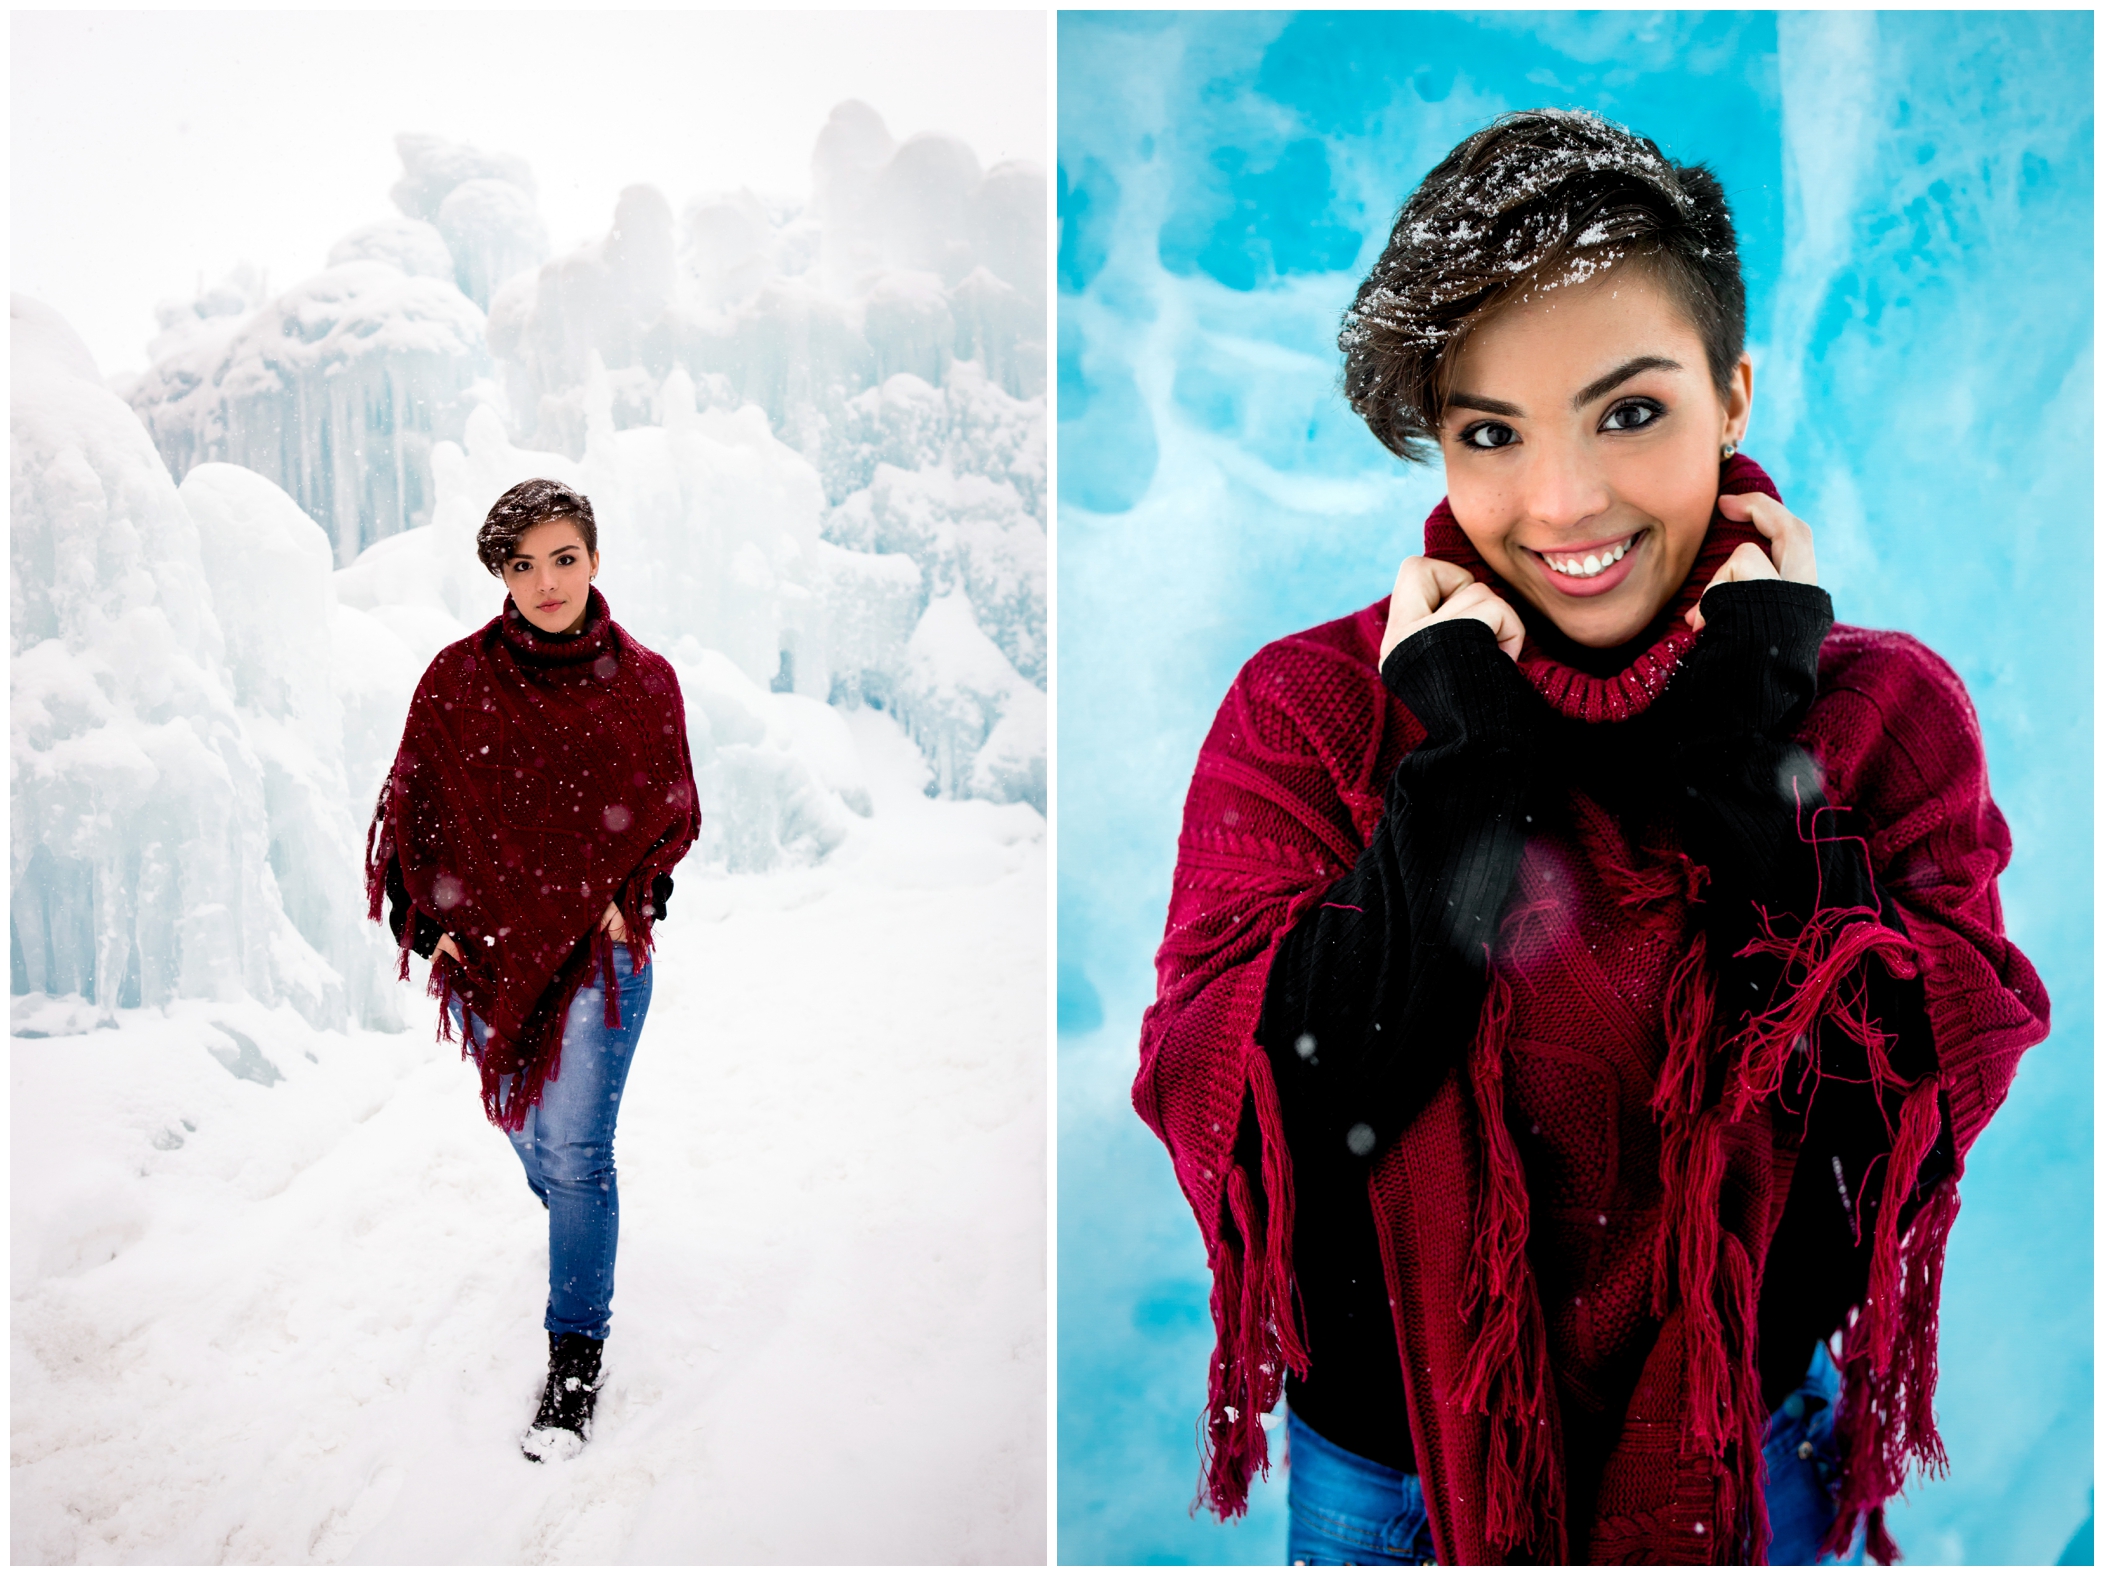 snowy winter senior photos inspiration at the Dillon Colorado ice castles 